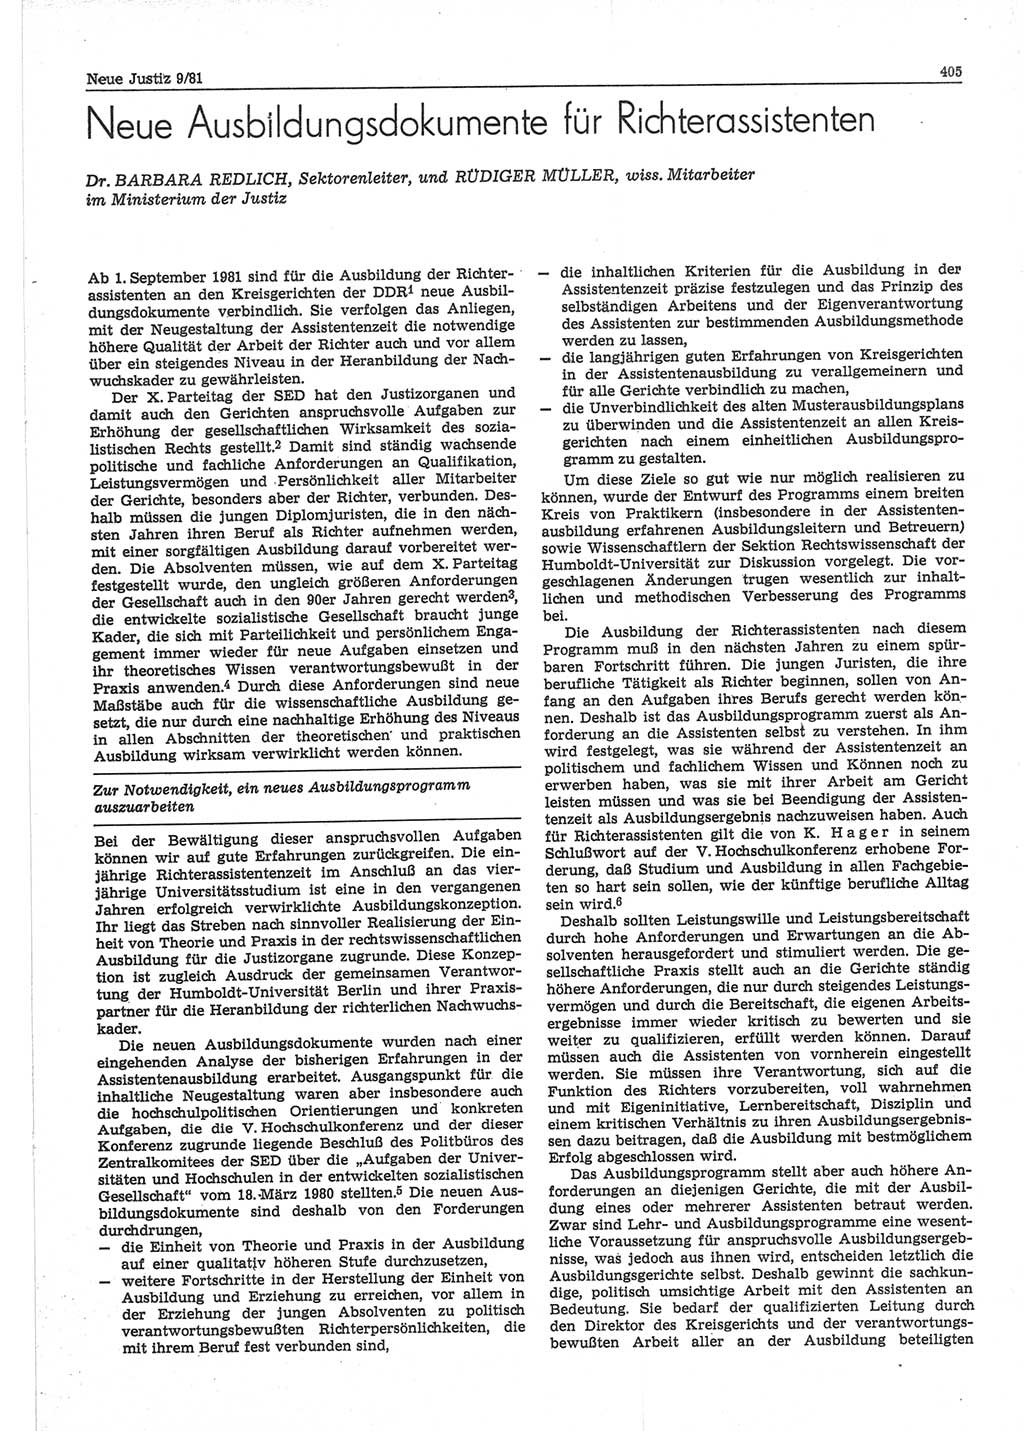 Neue Justiz (NJ), Zeitschrift für sozialistisches Recht und Gesetzlichkeit [Deutsche Demokratische Republik (DDR)], 35. Jahrgang 1981, Seite 405 (NJ DDR 1981, S. 405)